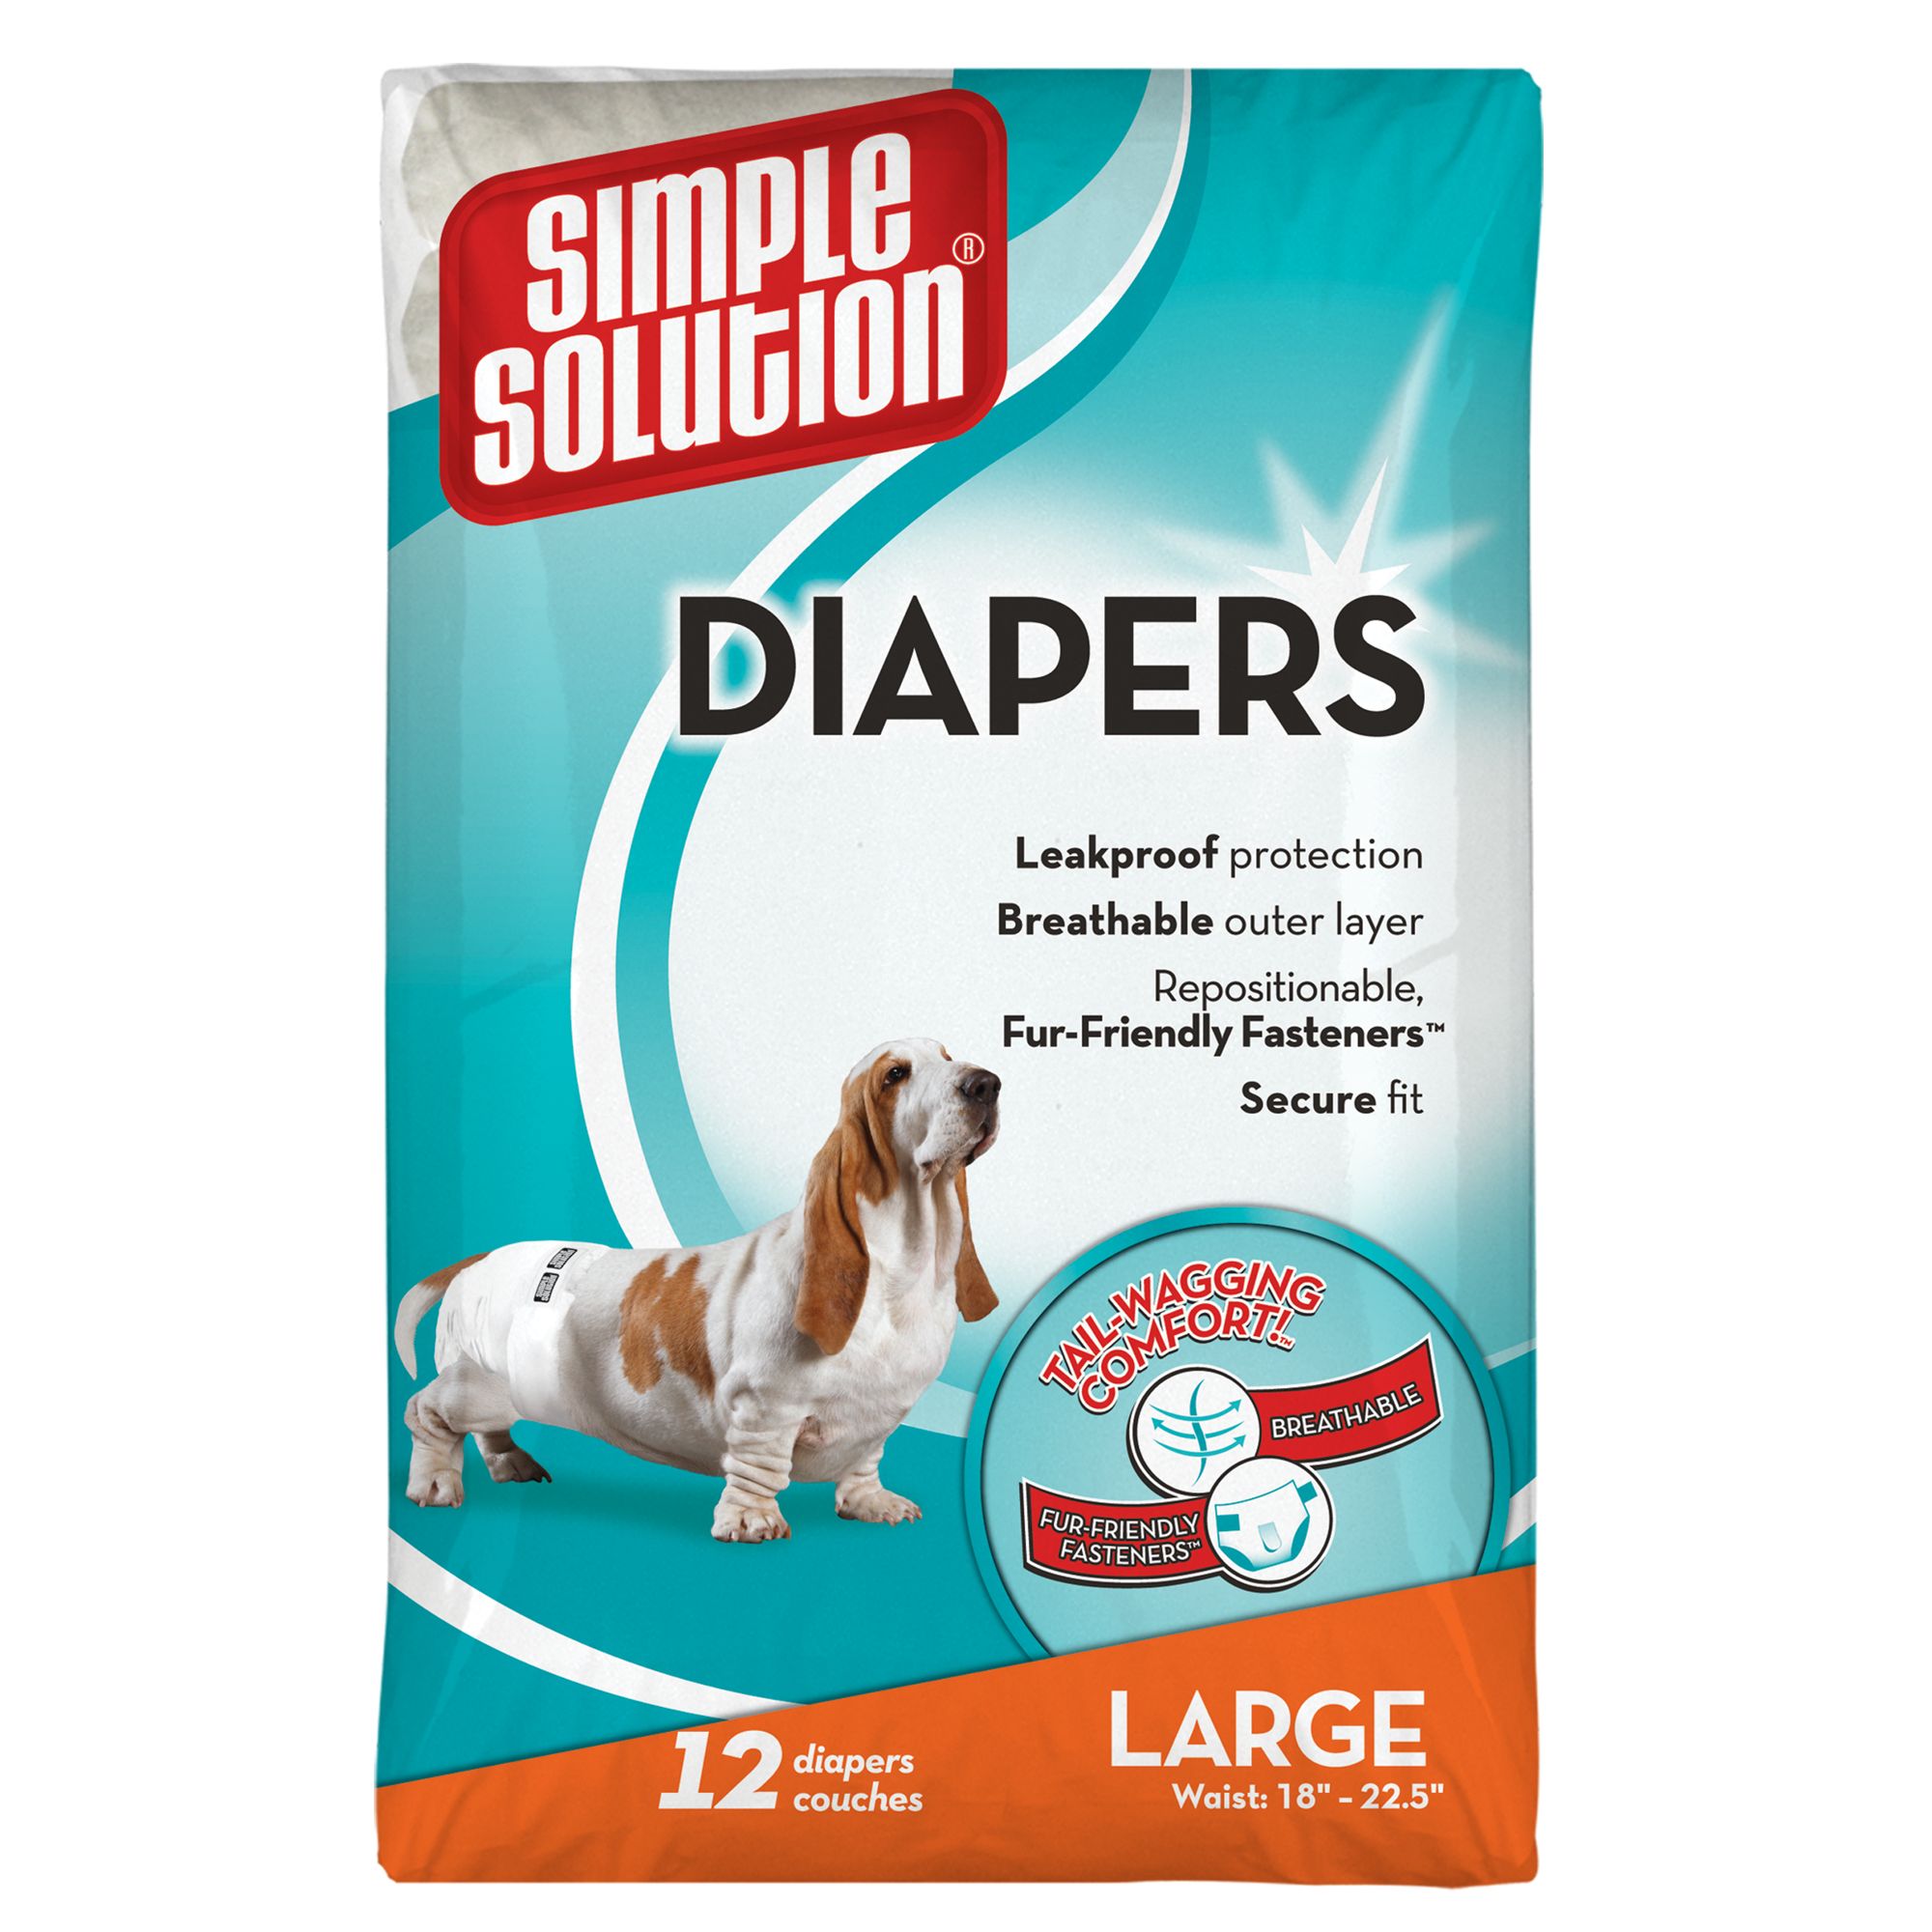 pet diapers